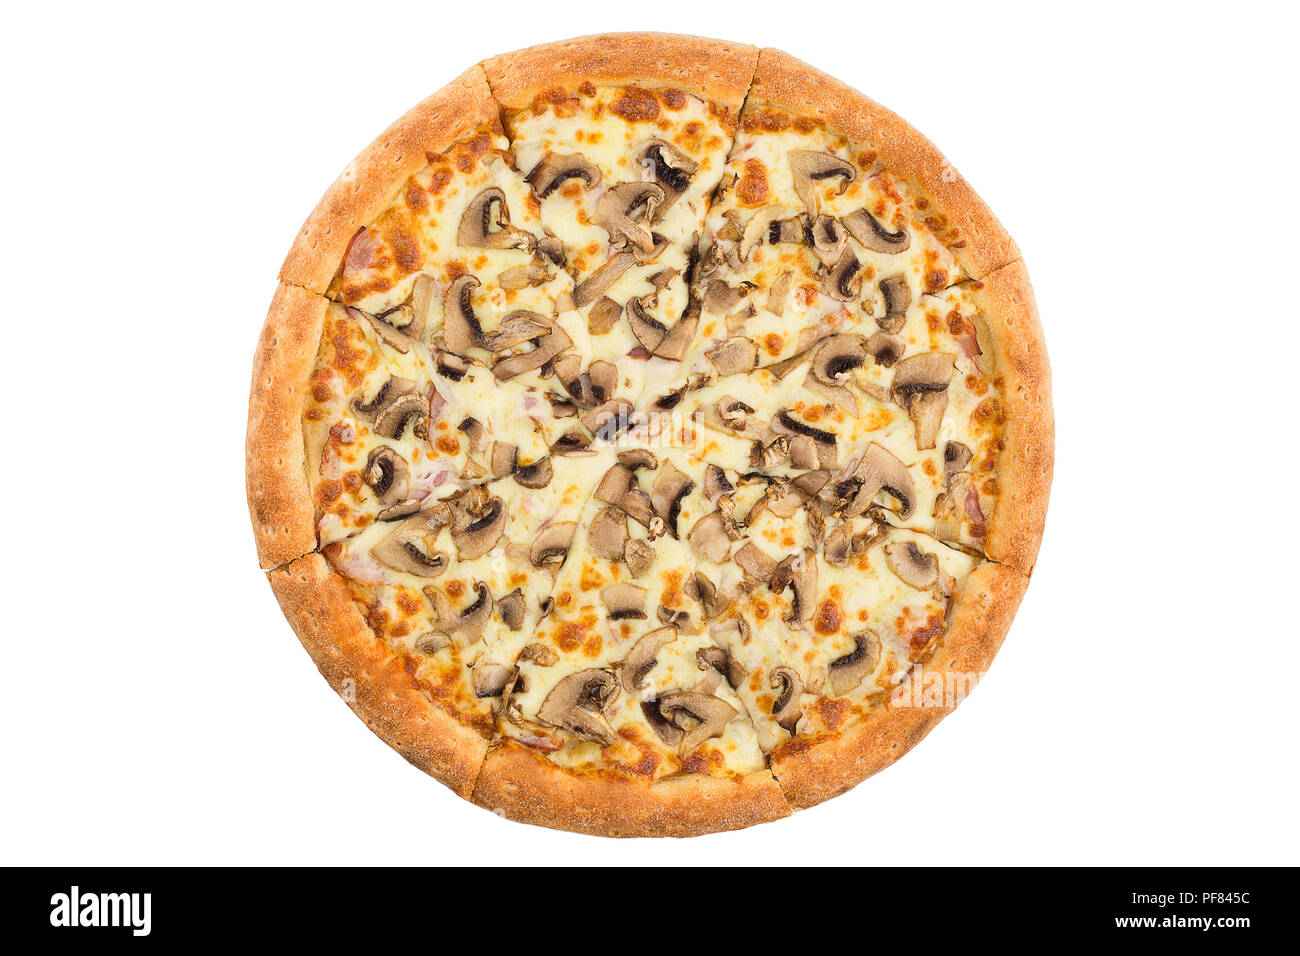 грибная пицца с шампиньонами рецепт с фото пошагово фото 93